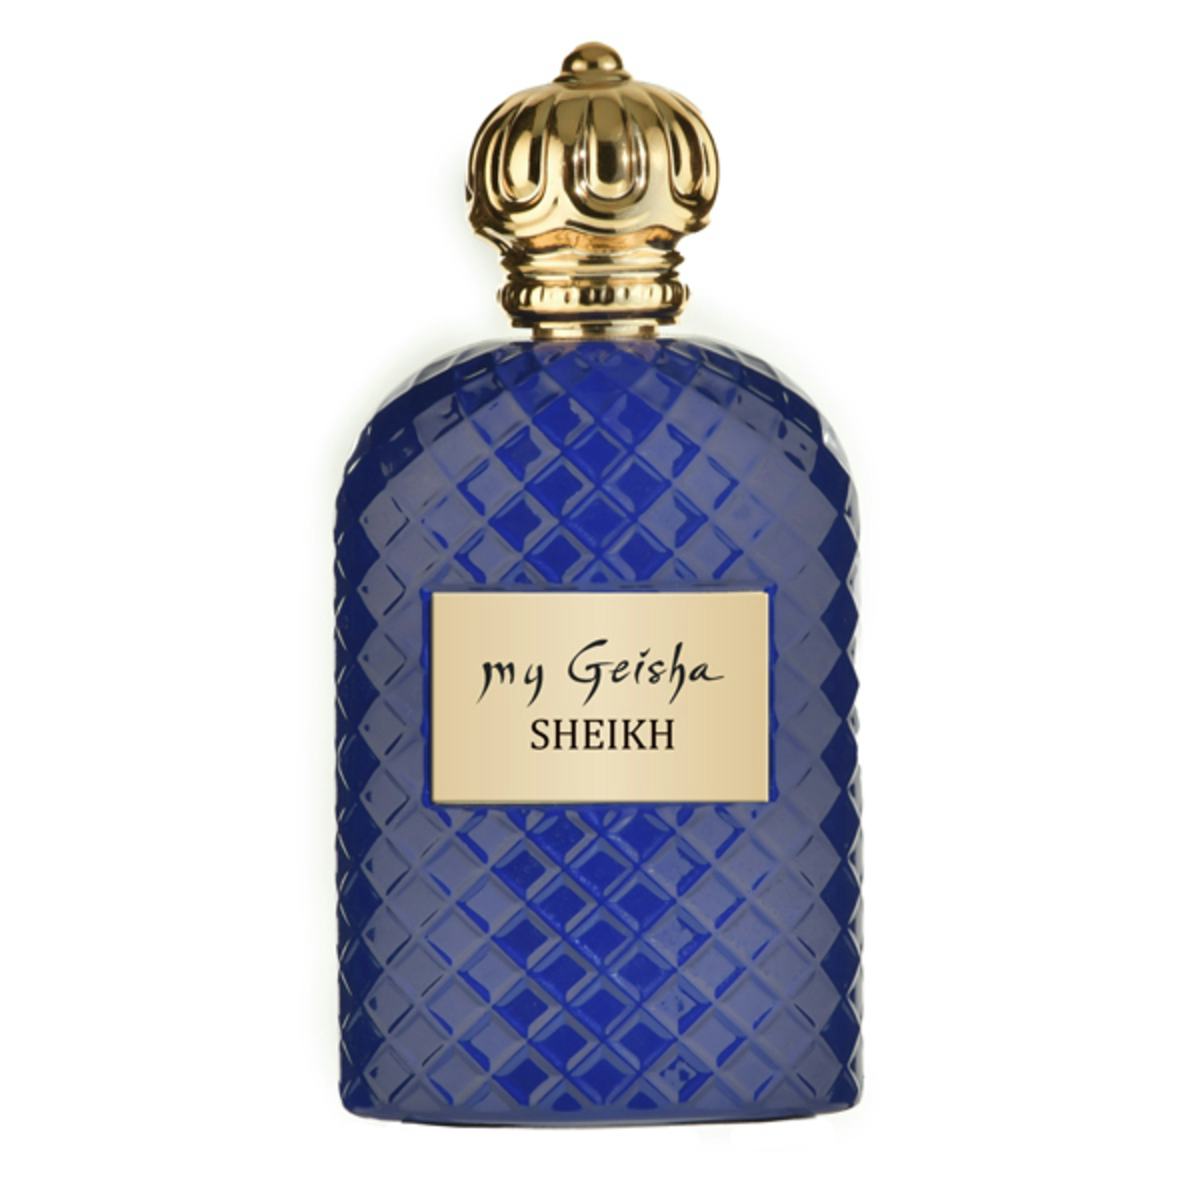 Extrait de parfum SHEIKH 100 ml, prodotto artigianale per la vendita diretta in Svizzera